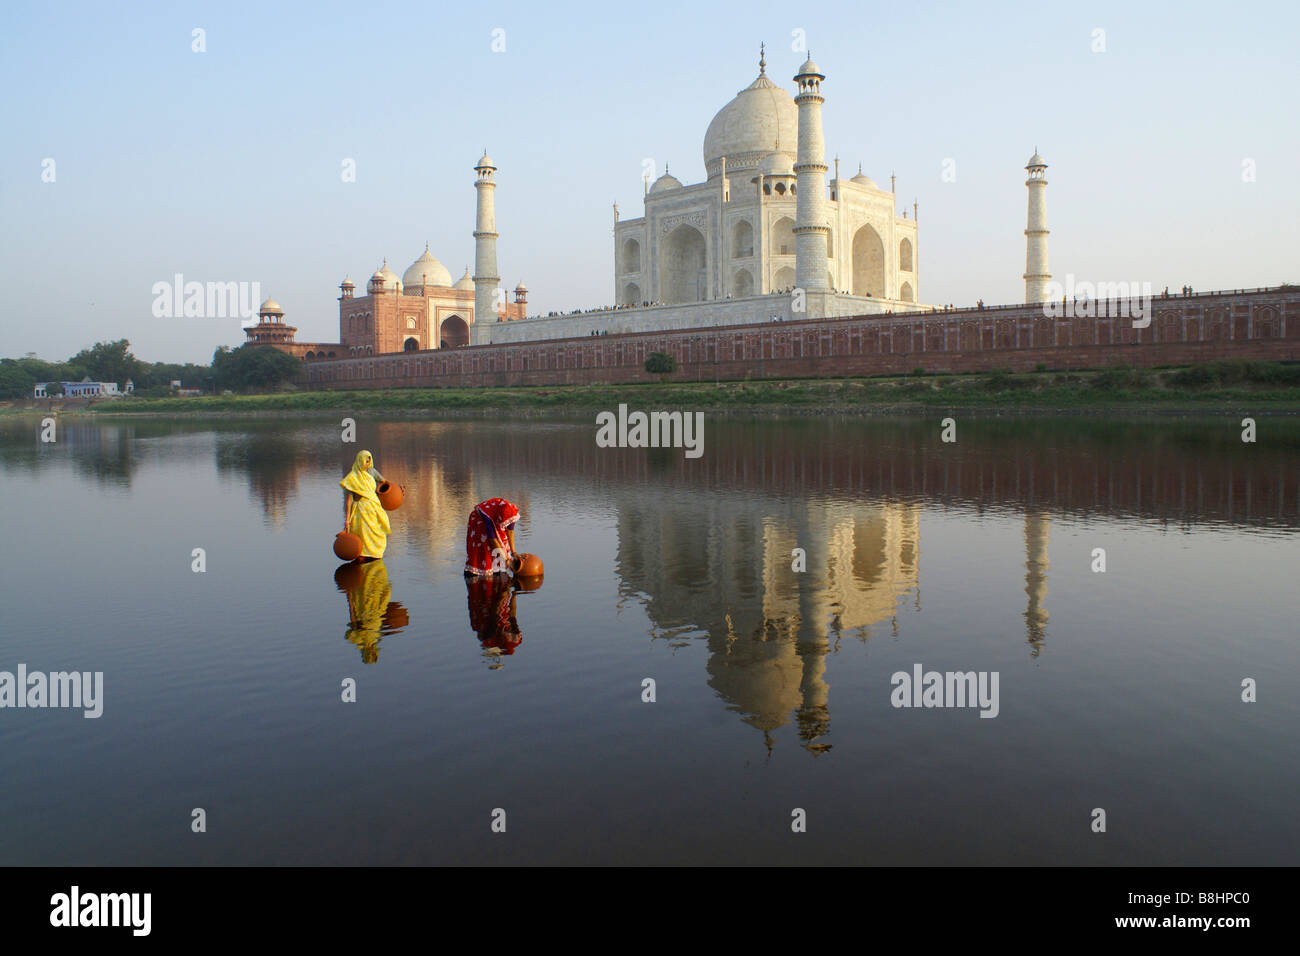 Les femmes obtenir de l'eau à partir de la rivière Yamuna avec Taj Mahal en arrière-plan, Agra, Inde Banque D'Images